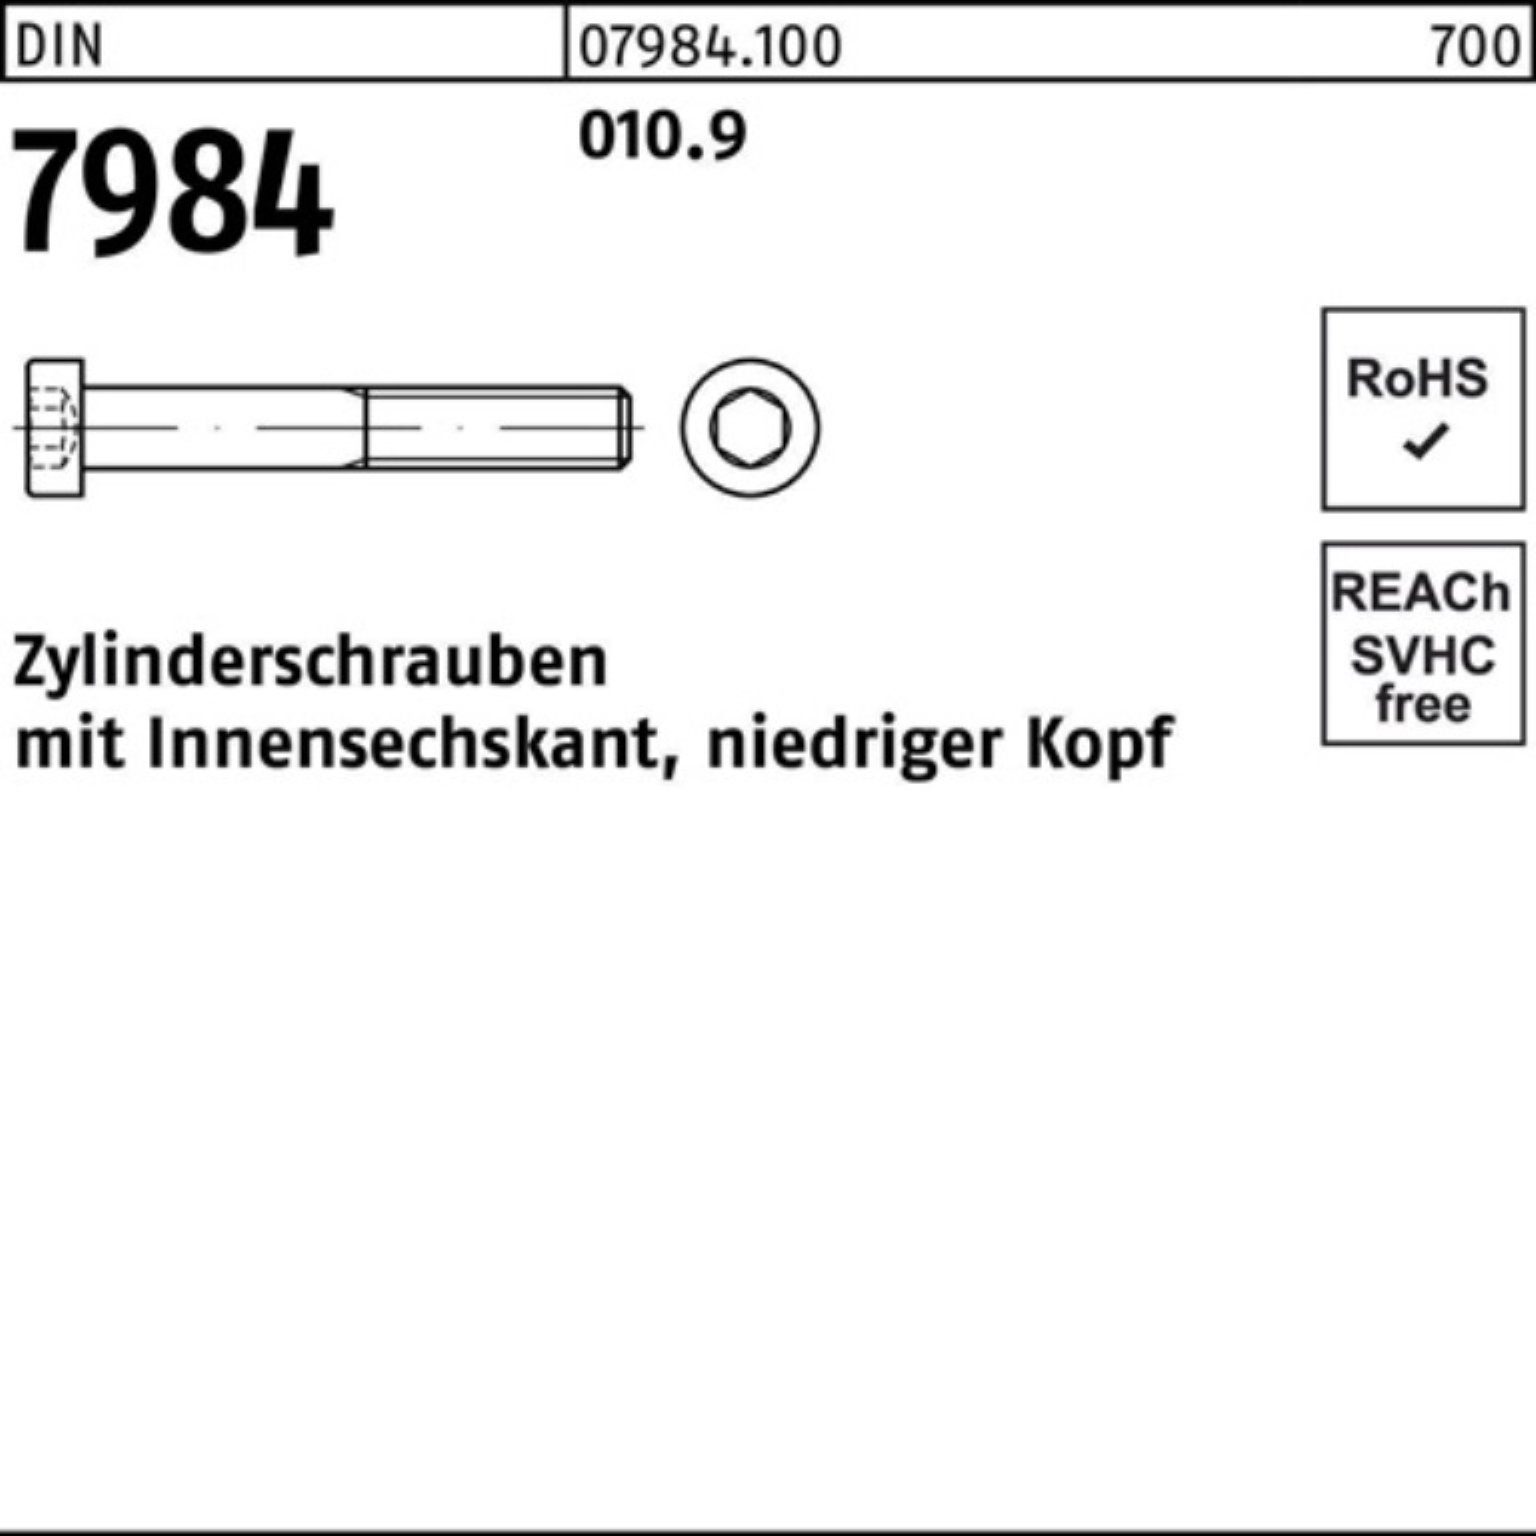 Reyher Stüc Innen-6kt 200 Zylinderschraube Zylinderschraube 7984 30 M10x 200er 010.9 DIN Pack